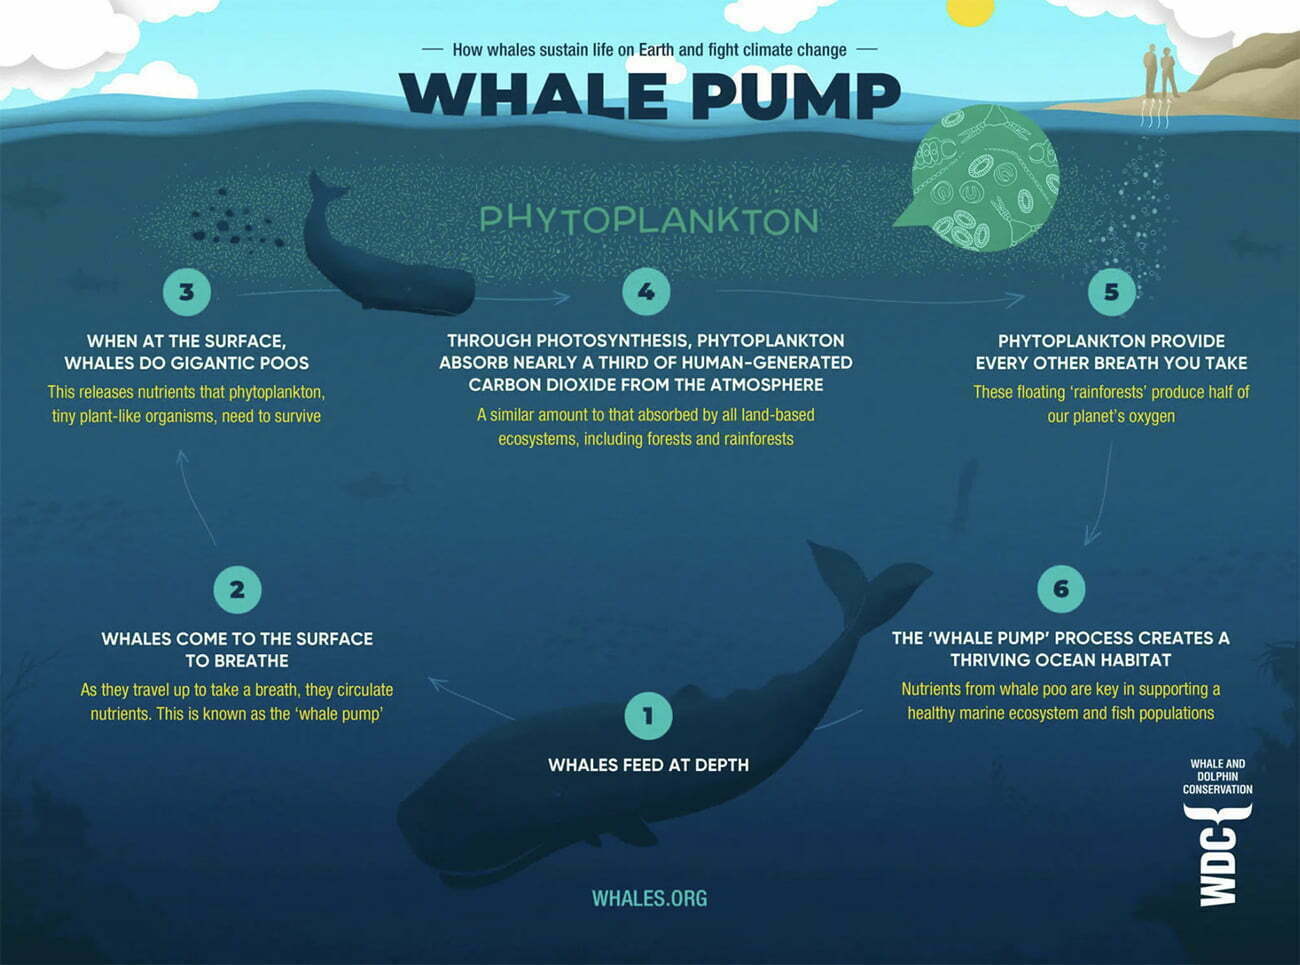 infográfico mostra benefícios das baleias para vida marinha e aquecimento global